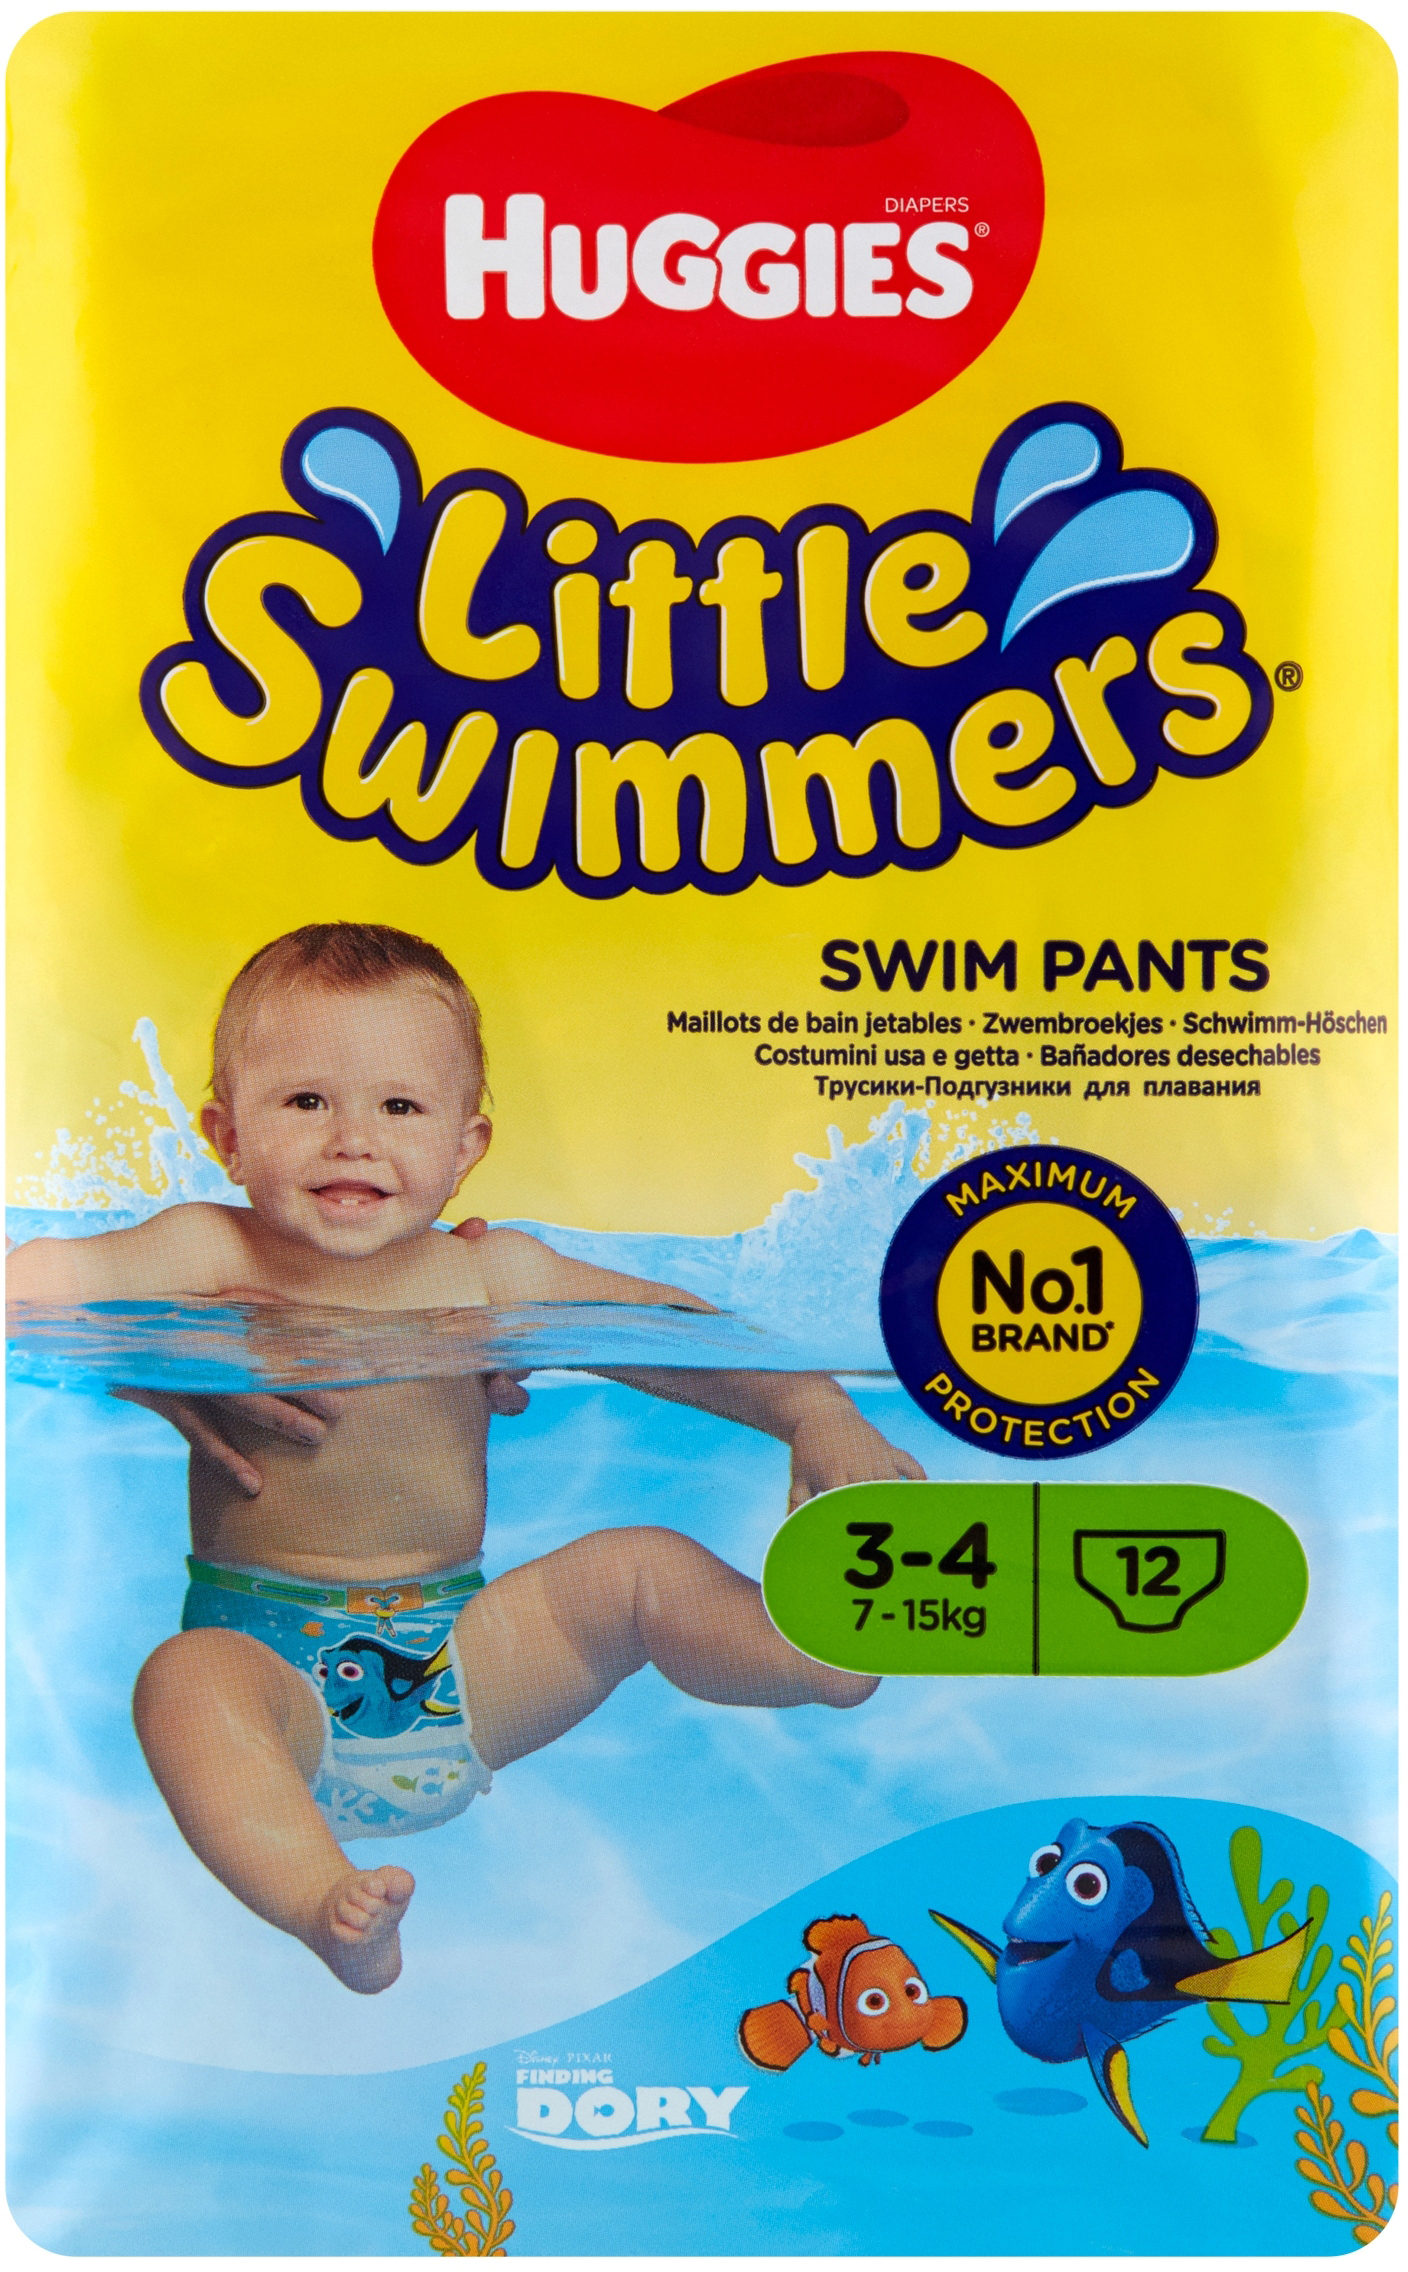 huggies little swimmers opinie